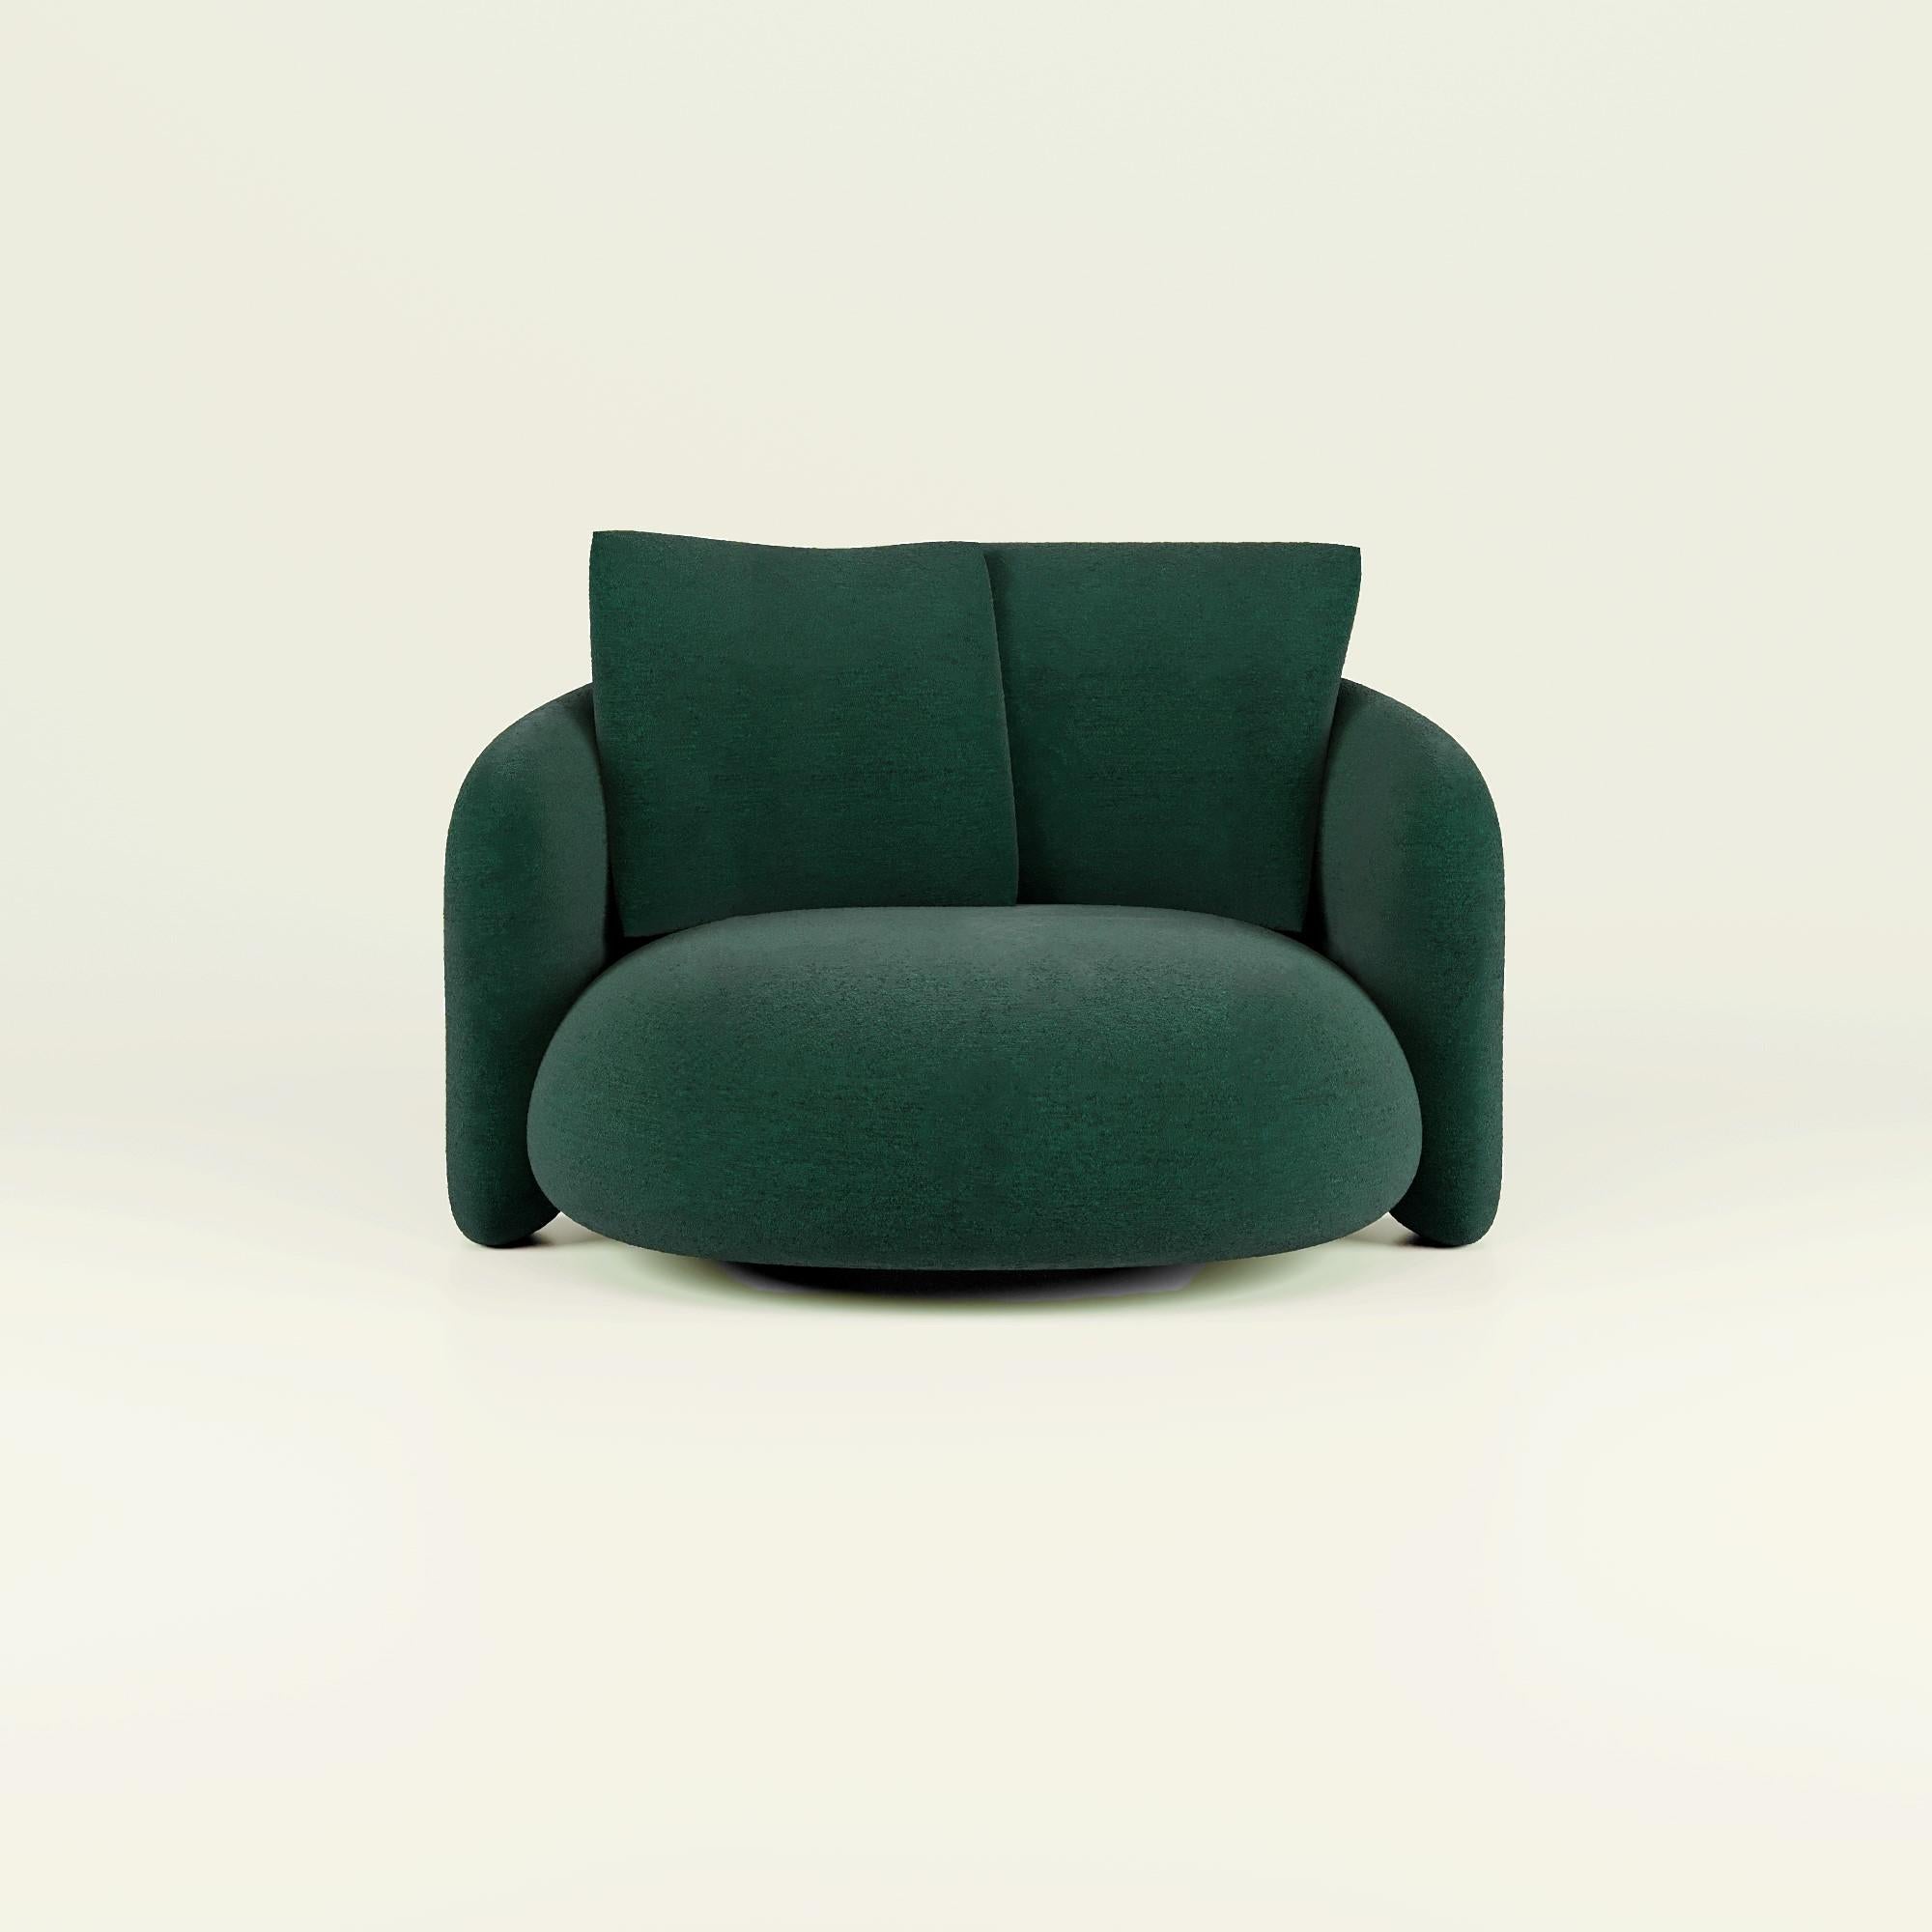 Expression de l'excellence du design moderne, le Bold Love Seat est un témoignage de l'art de vivre dans le luxe. Des décennies d'expertise en matière de design sont mises en valeur par une esthétique élégante et raffinée. Son design accueillant